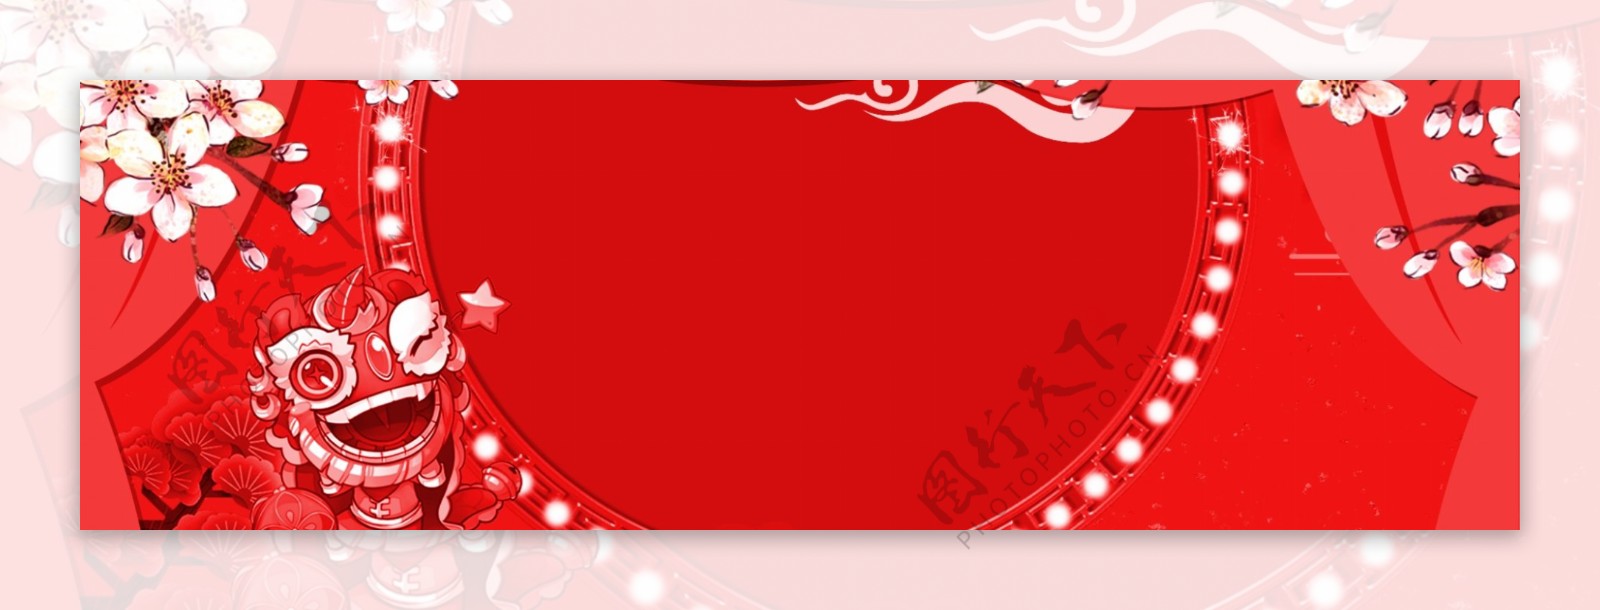 传统节日新年快乐猪年春节banner背景